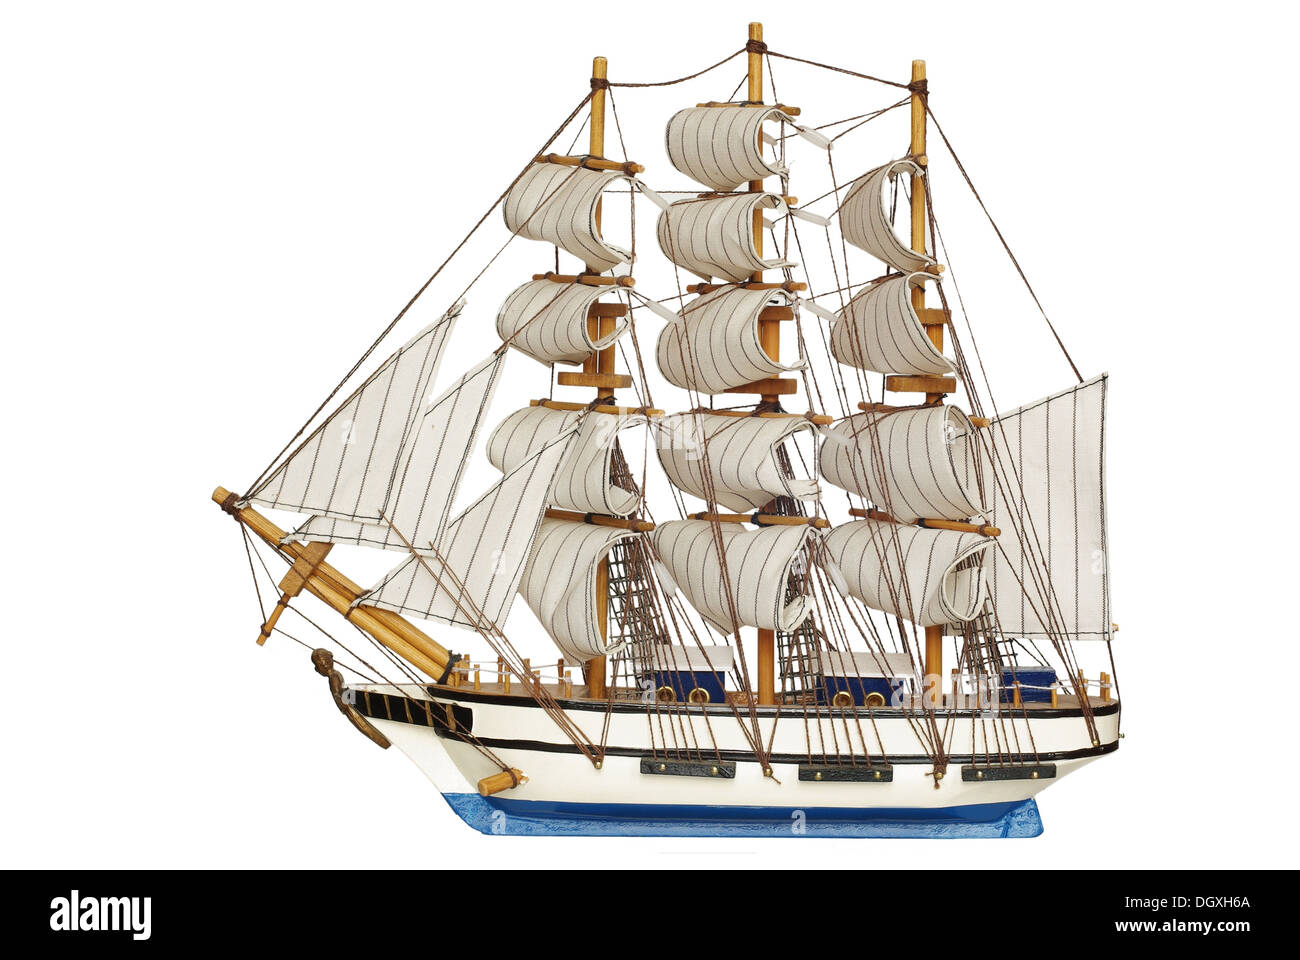 Segelschiff unter vollen Segeln auf weißem Hintergrund Stockfoto